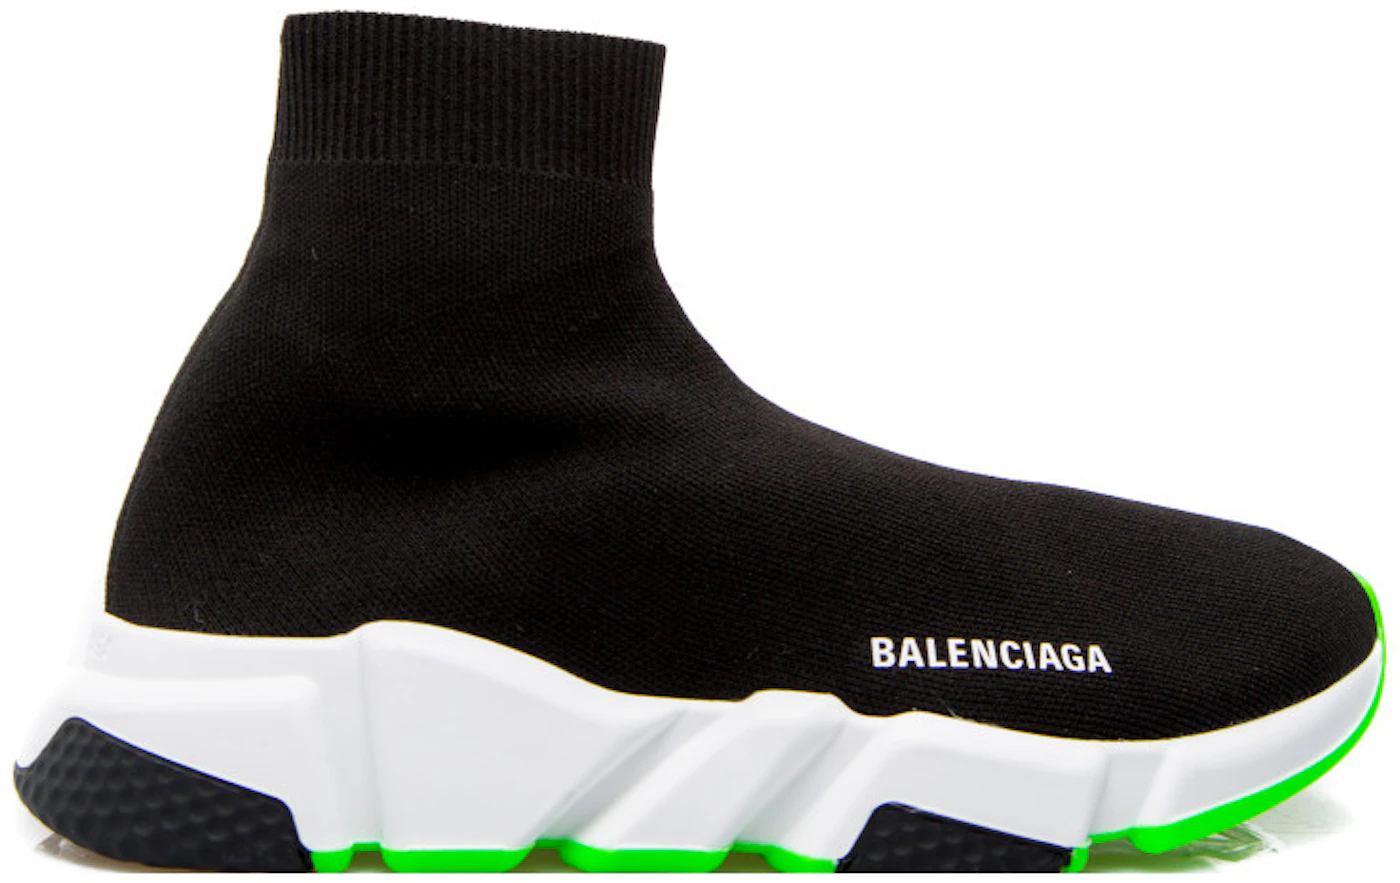 Balenciaga Trainer Green Sole Men's - 587286 W1704 1073 - US